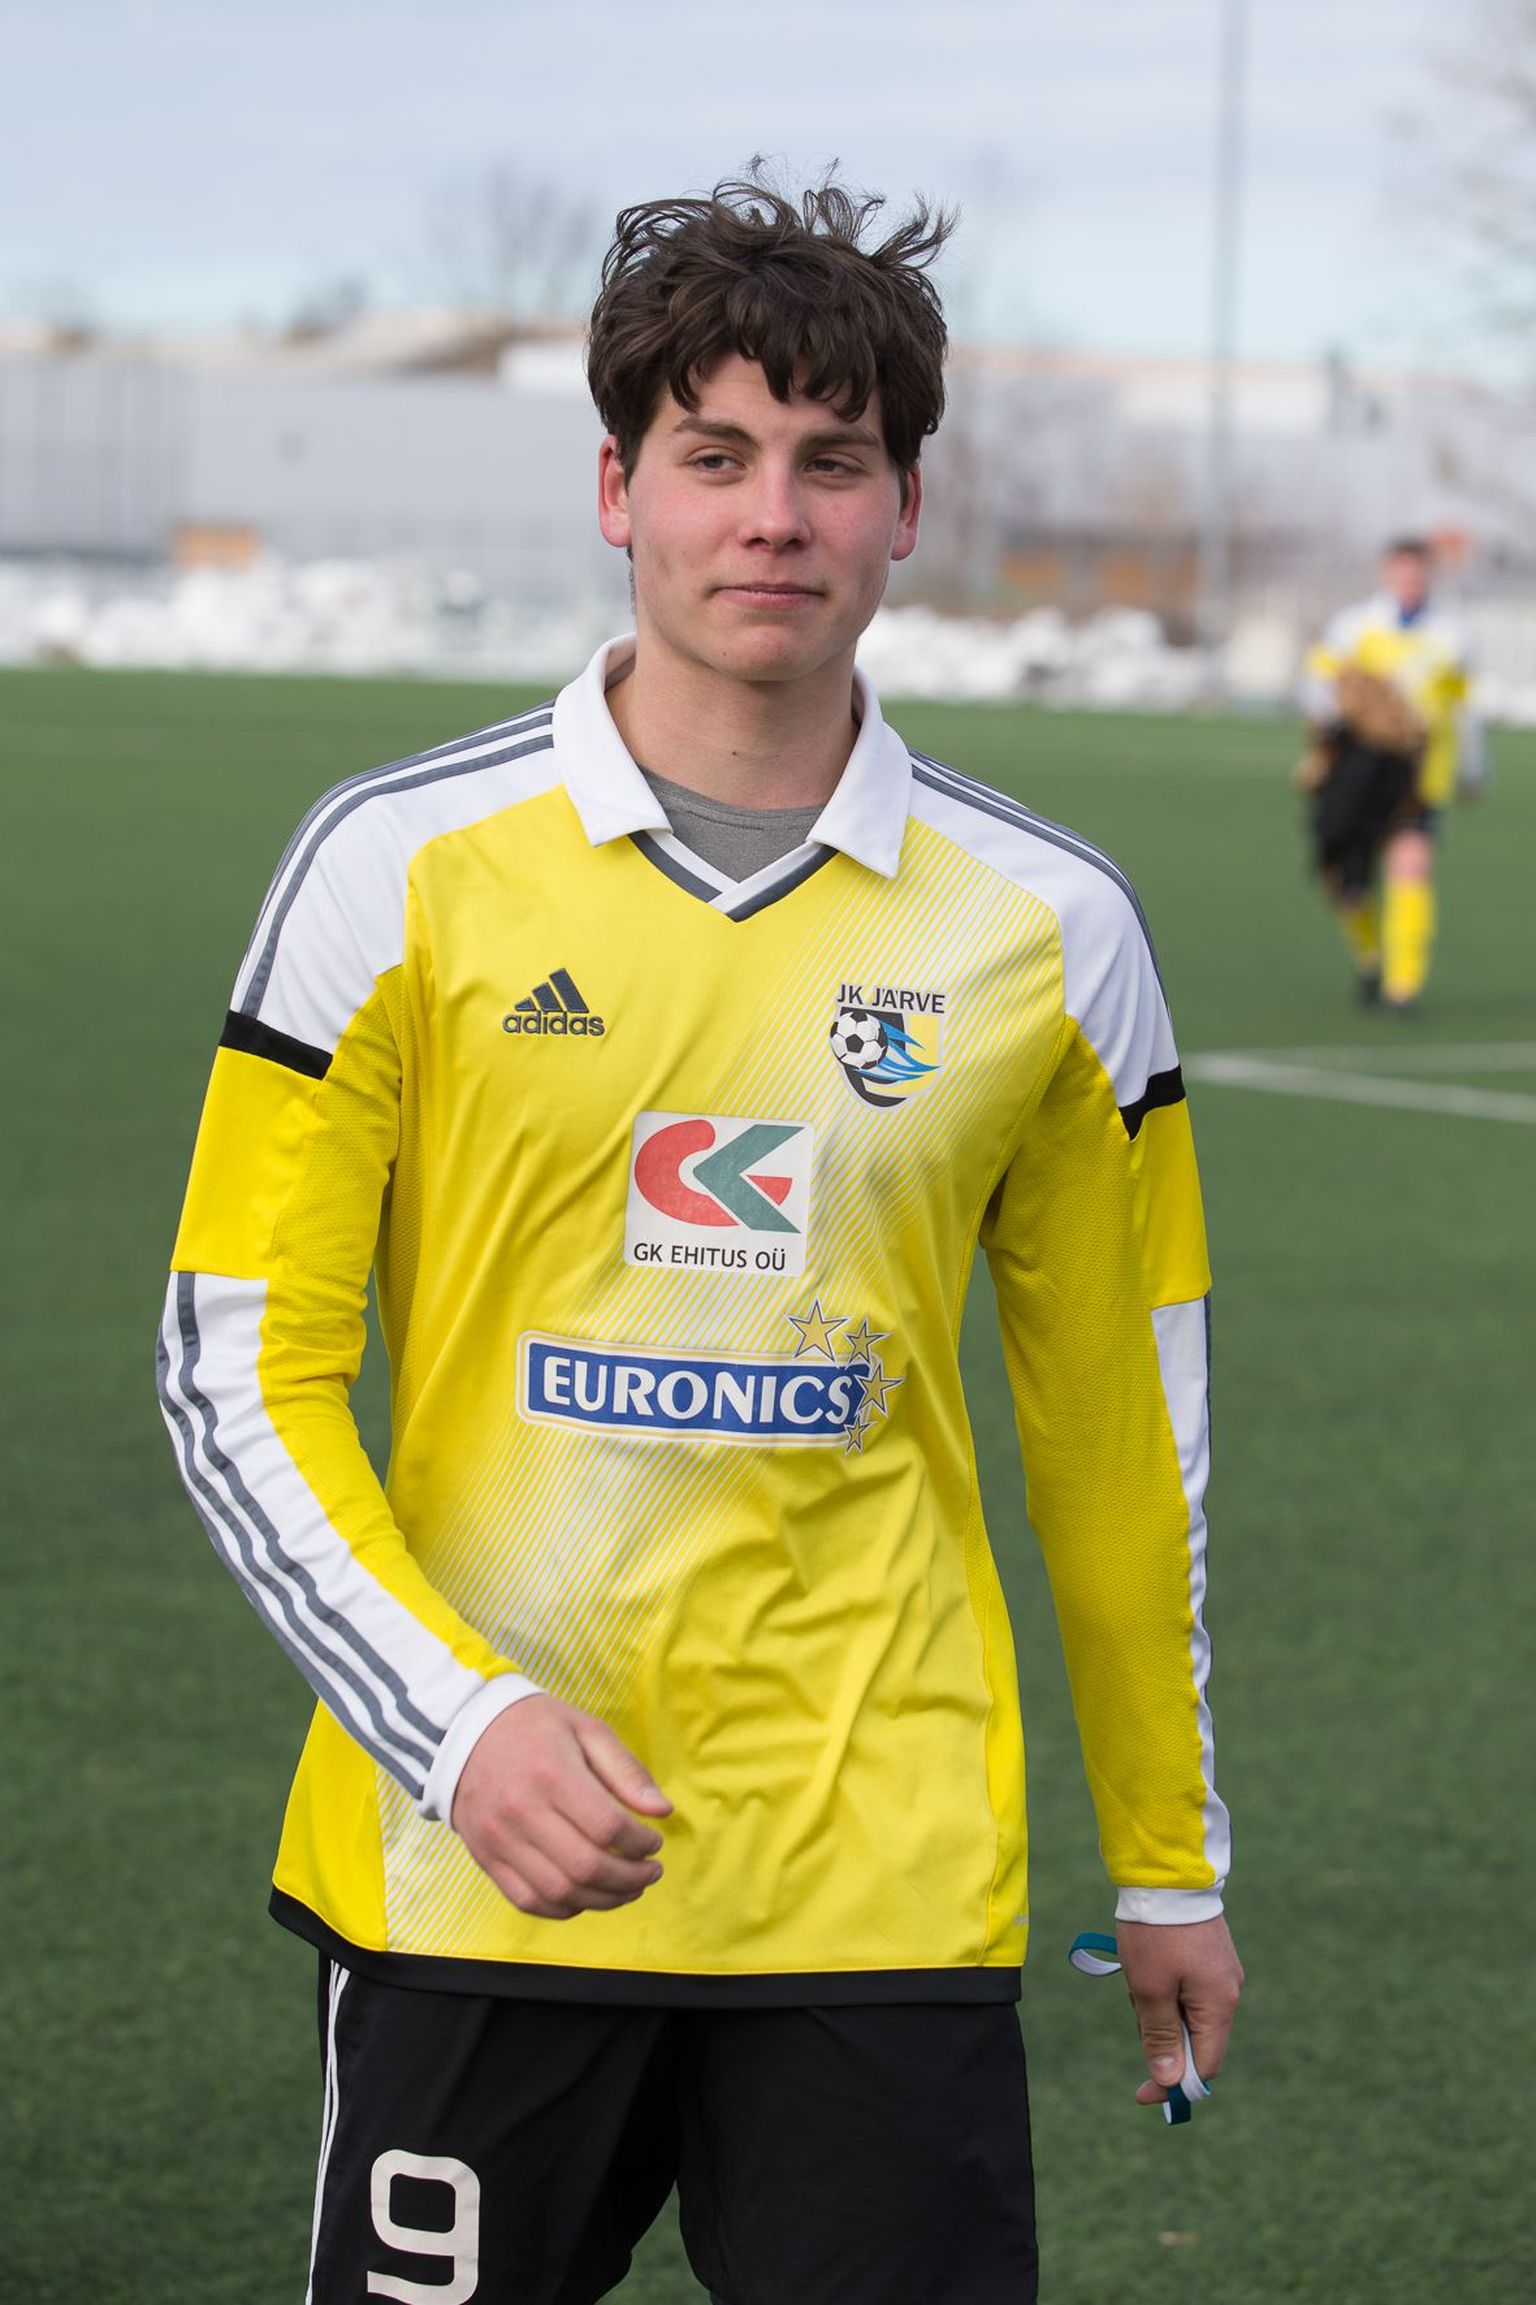 В первой игре сезона героем ФК "Ярве" был Райво Саар, который забил два гола, а также заработал для своей команды пенальти.